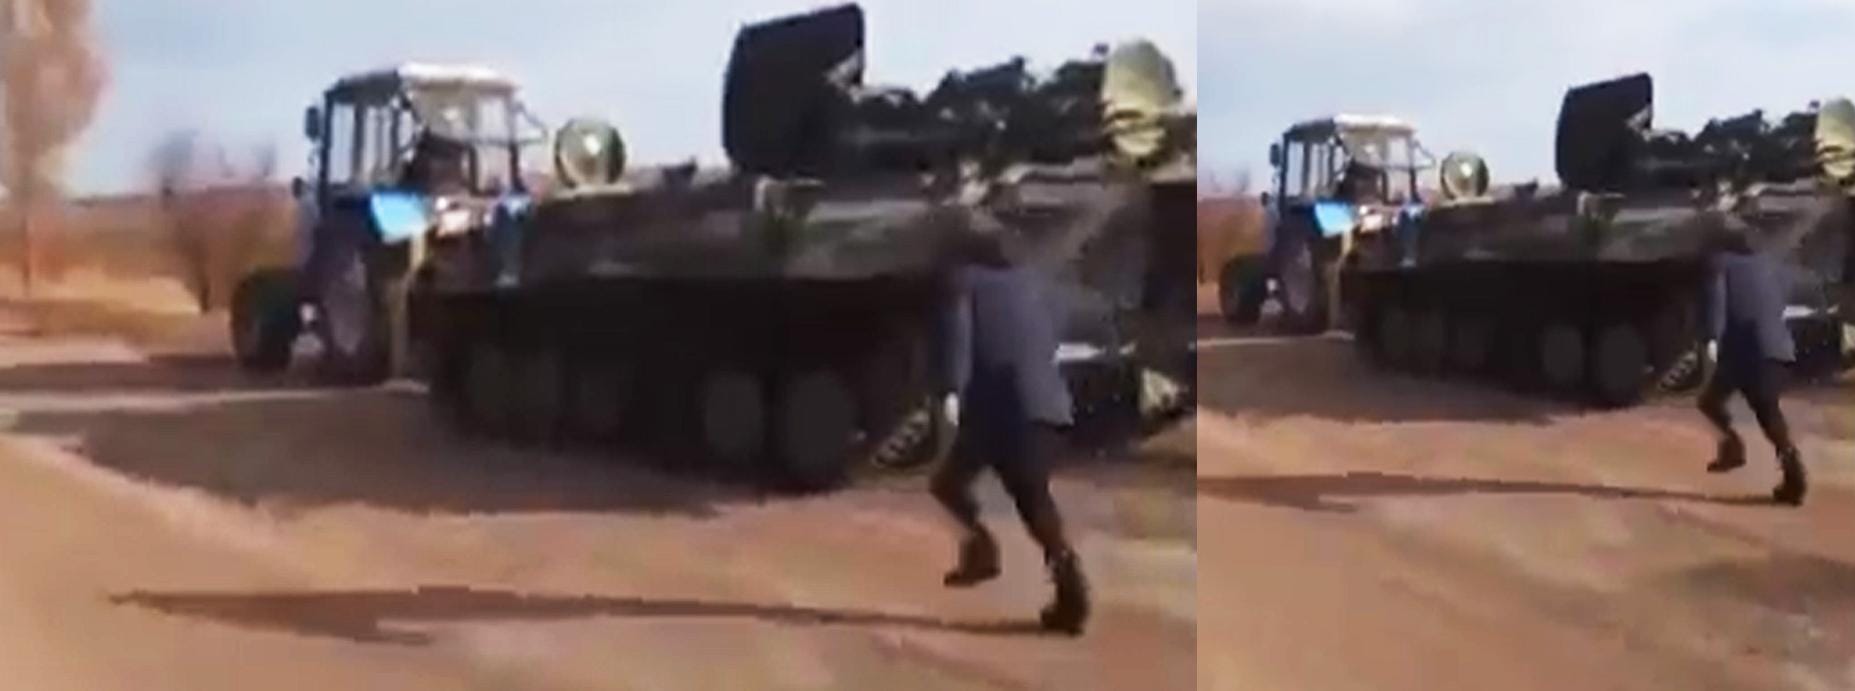 Ein Video geht um die Welt: Ein ukrainischer Bauer schleppt mit seinem Traktor einen russischen Panzer ab. Das sorgt nicht nur für Spott über die schlecht vorbereiteten russischen Truppen. Der Traktor wird auch zum Symbol für den ukrainischen Kampfwillen.